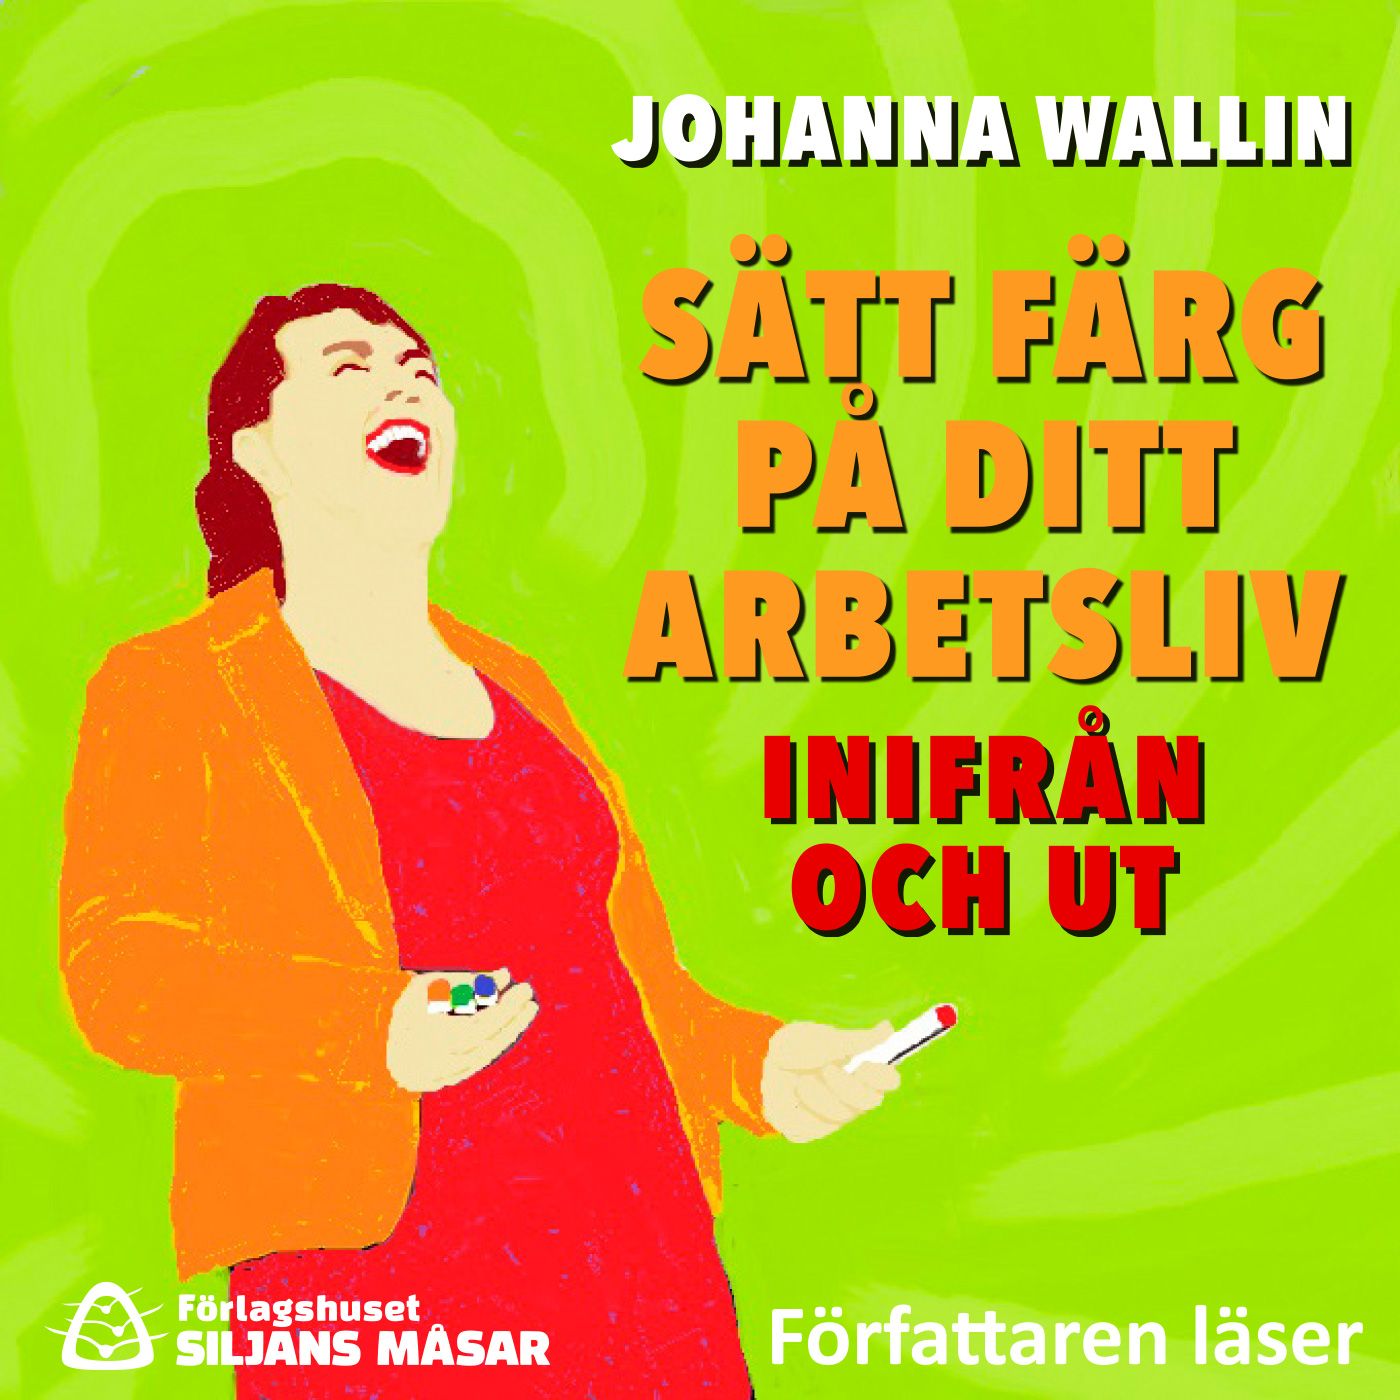 Sätt färg på ditt arbetsliv – inifrån och ut, audiobook by Johanna Wallin